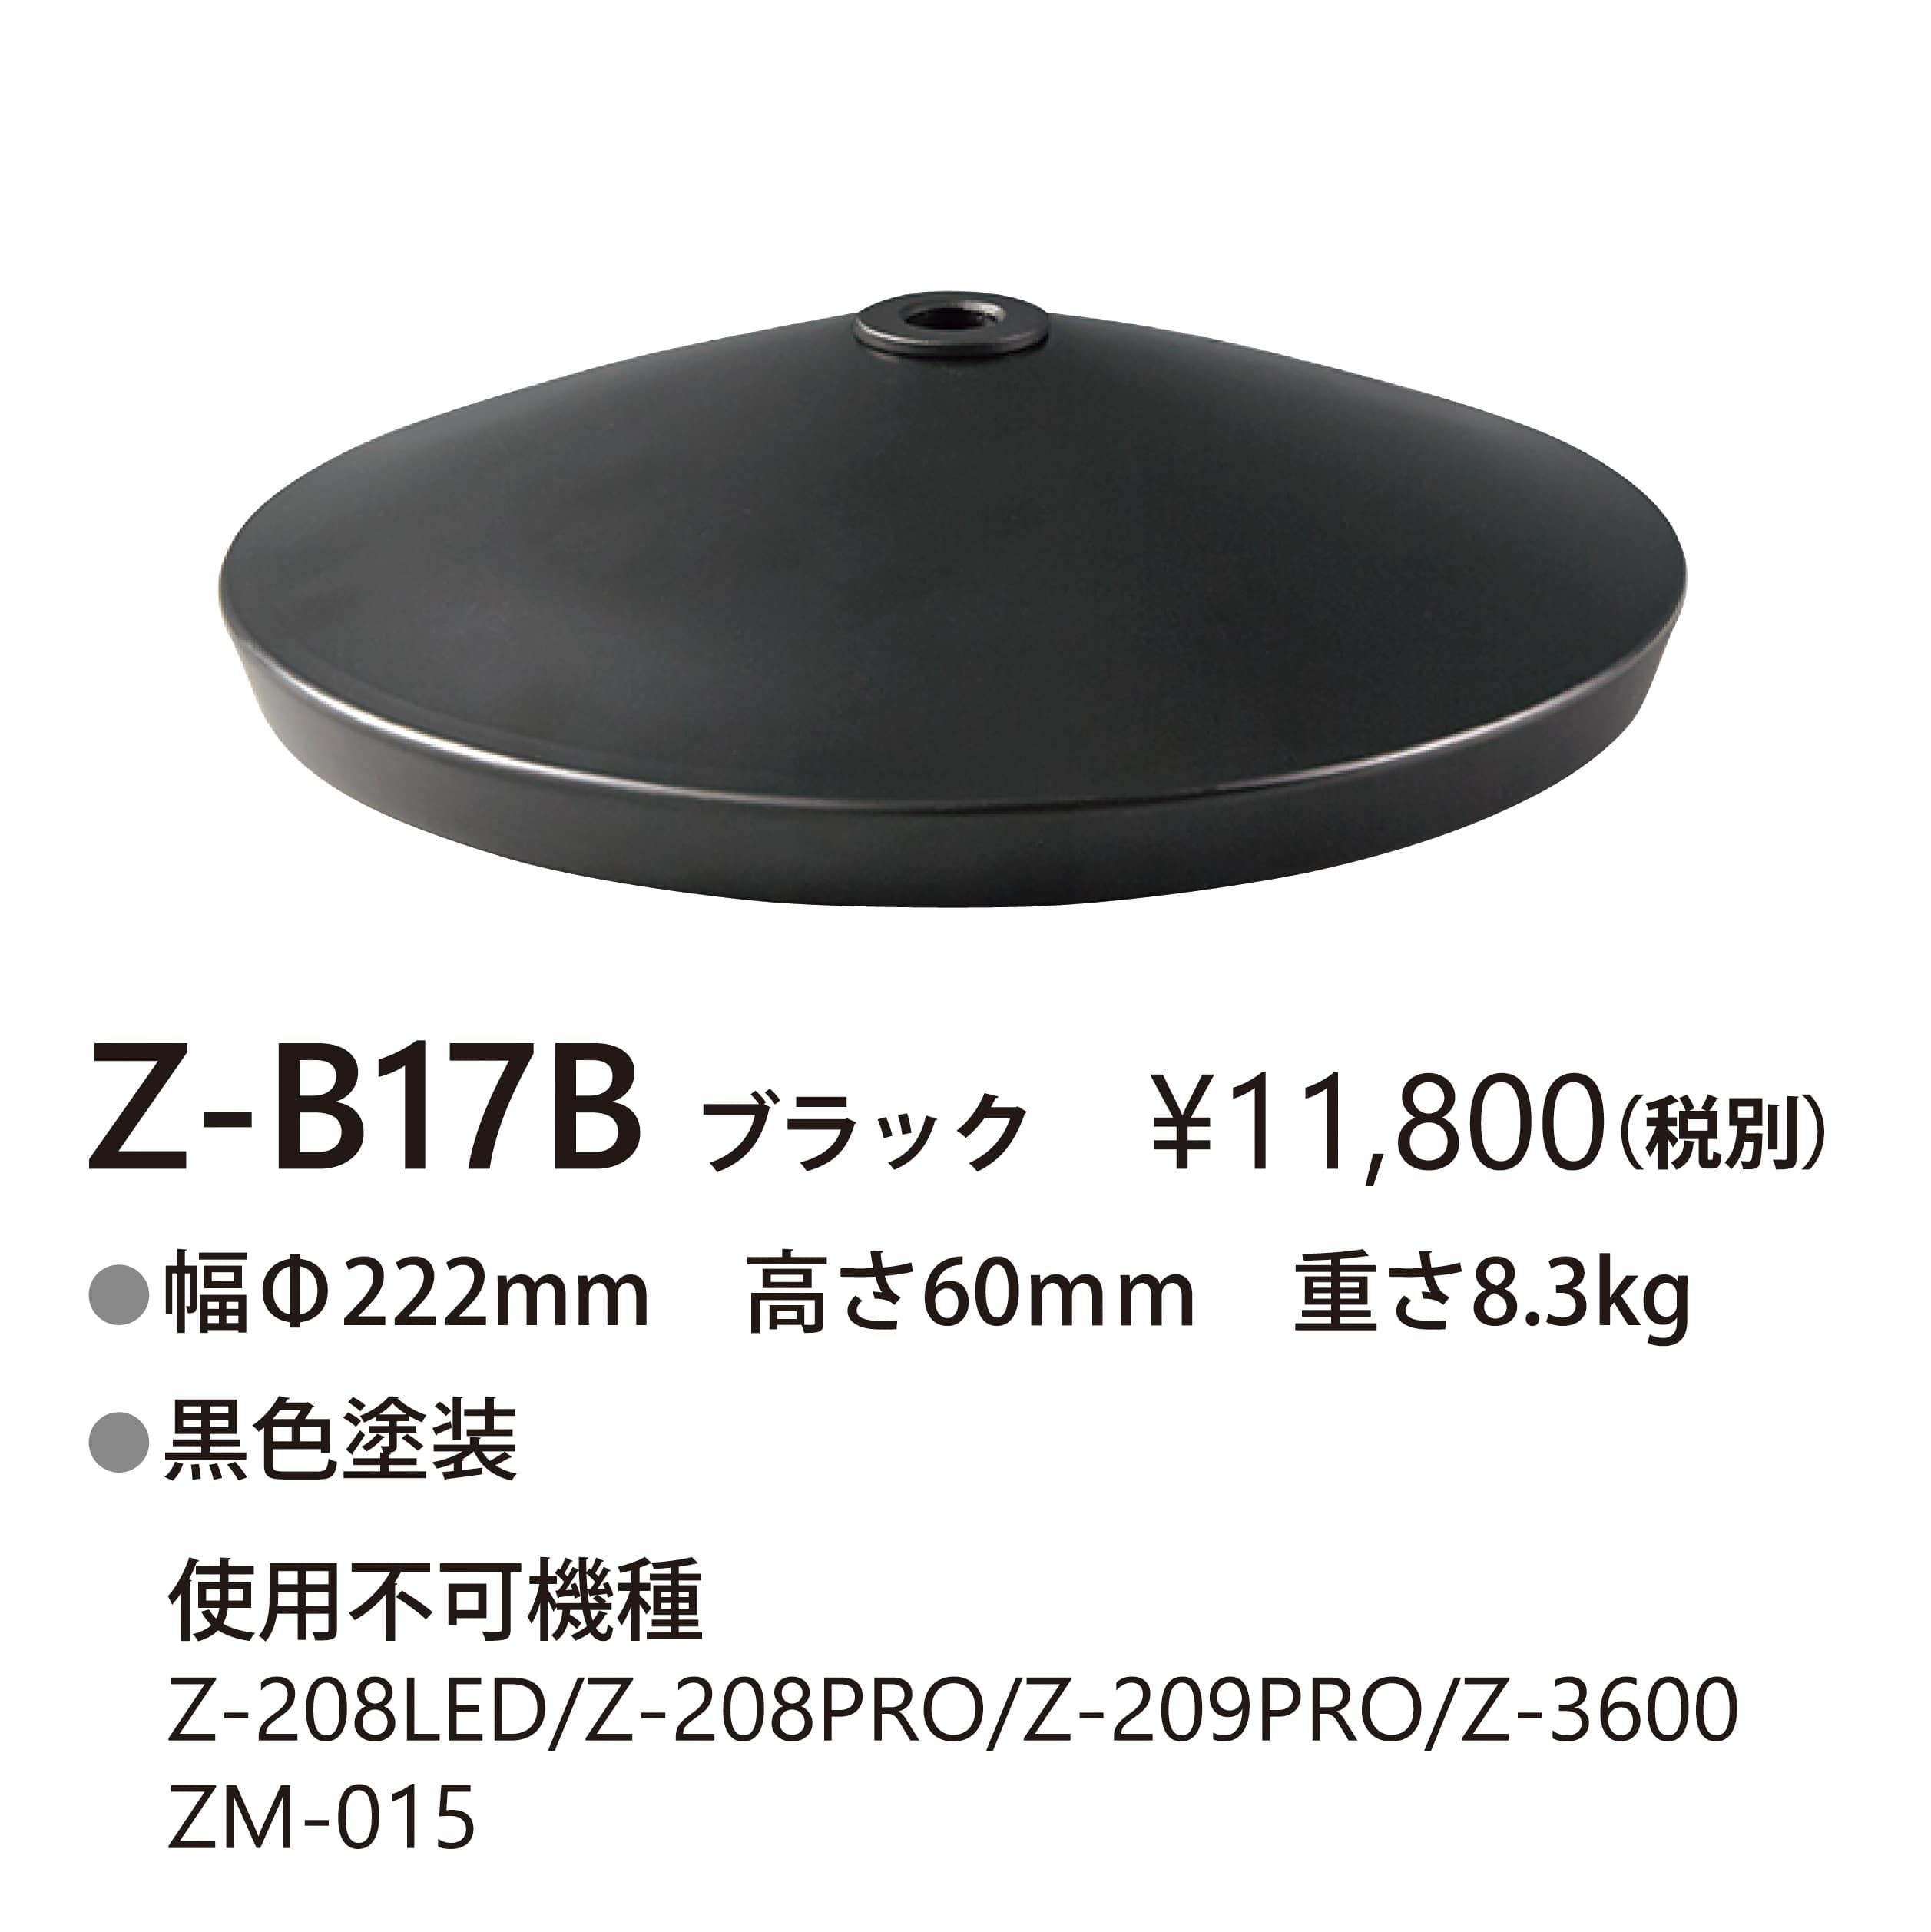 山田照明 Zライト専用 デスクベース Z-B17B: ウービルストア JRE MALL